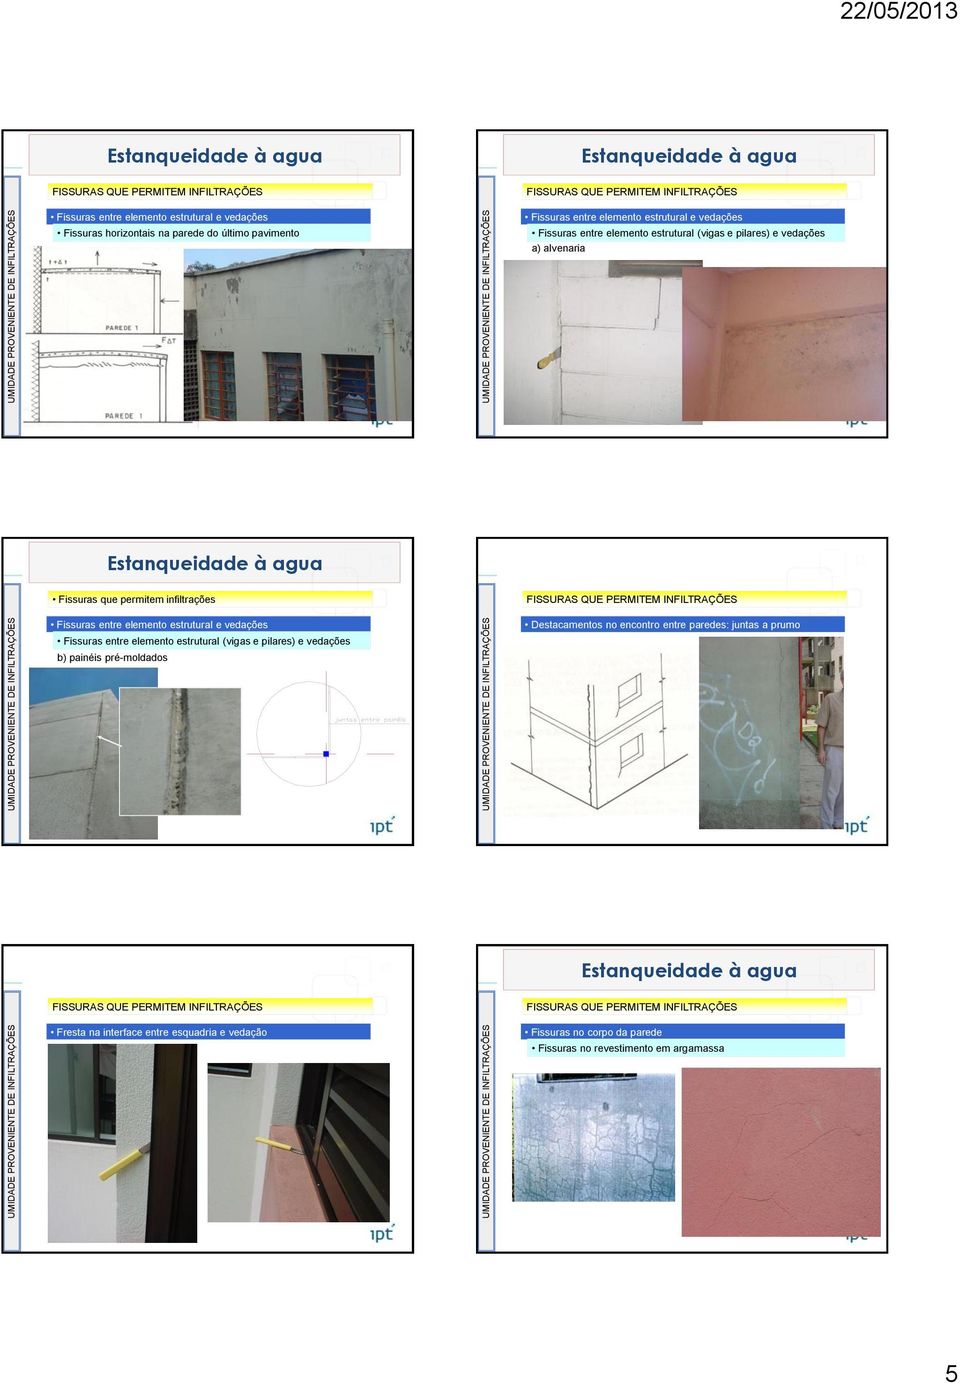 elemento estrutural e vedações Fissuras entre elemento estrutural (vigas e pilares) e vedações b) painéis pré-moldados Destacamentos no